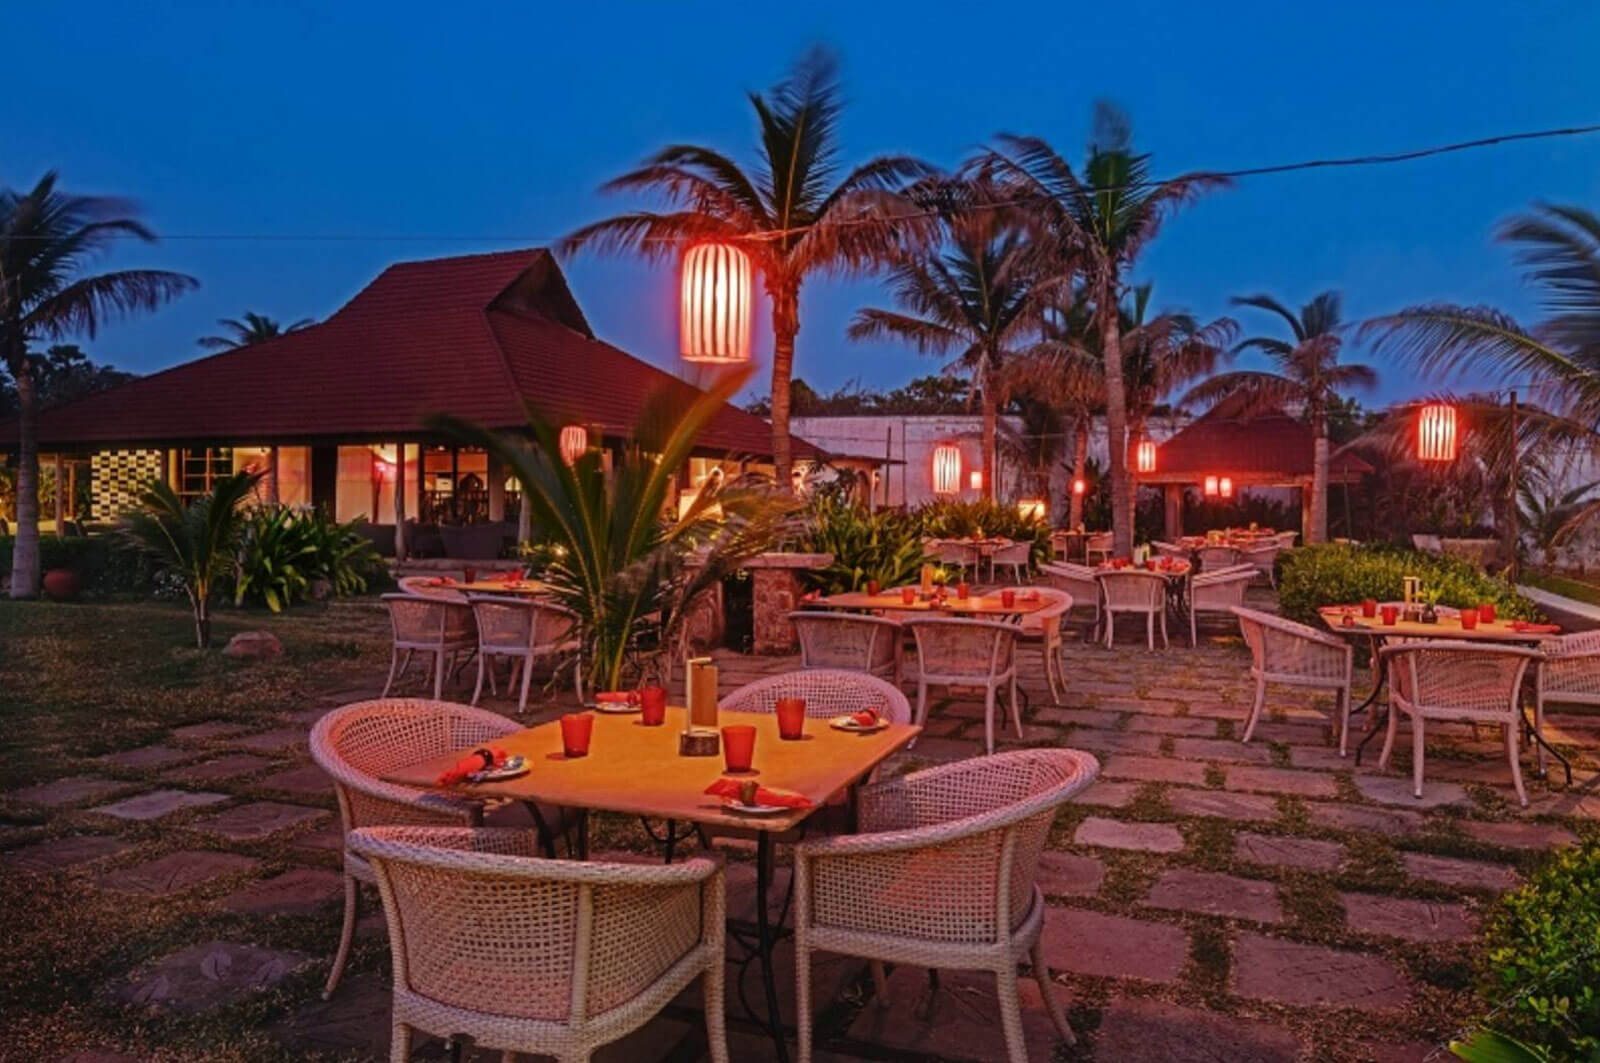 Night View at Bamboo Bay Restaurant